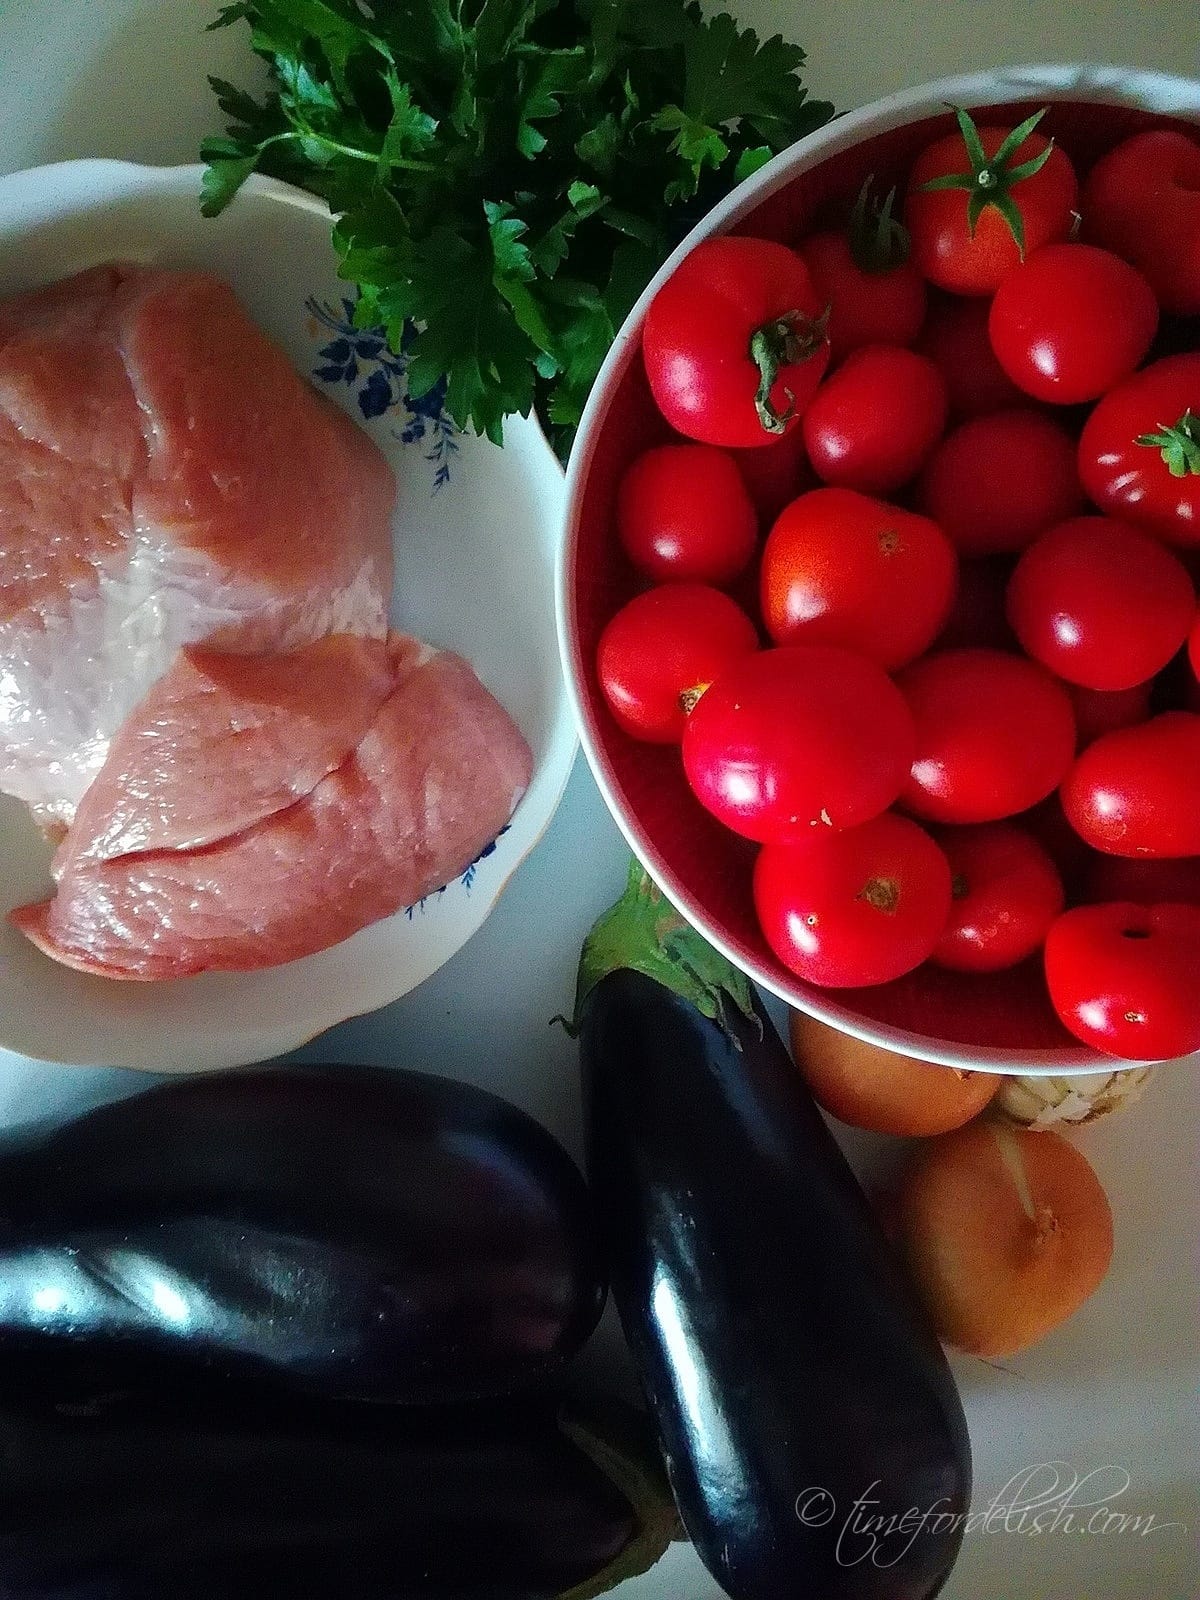 stewed eggplant recipe ingredients